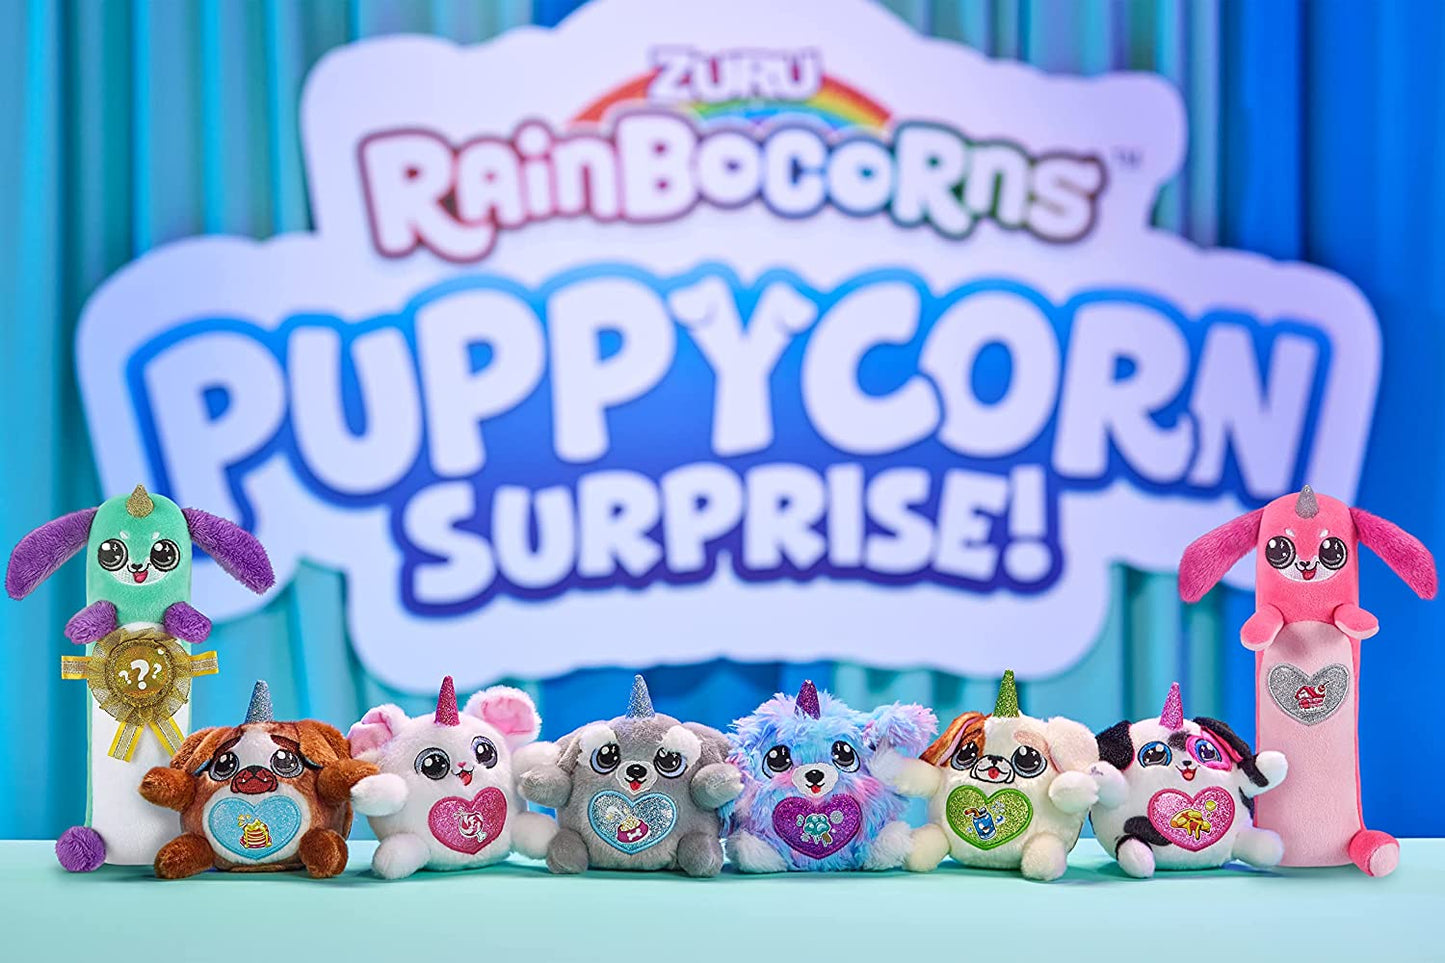 Rainbocorns Sparkle Heart Surprise Series 4 Puppycorn by ZURU, Surprise Egg - Random Color pick